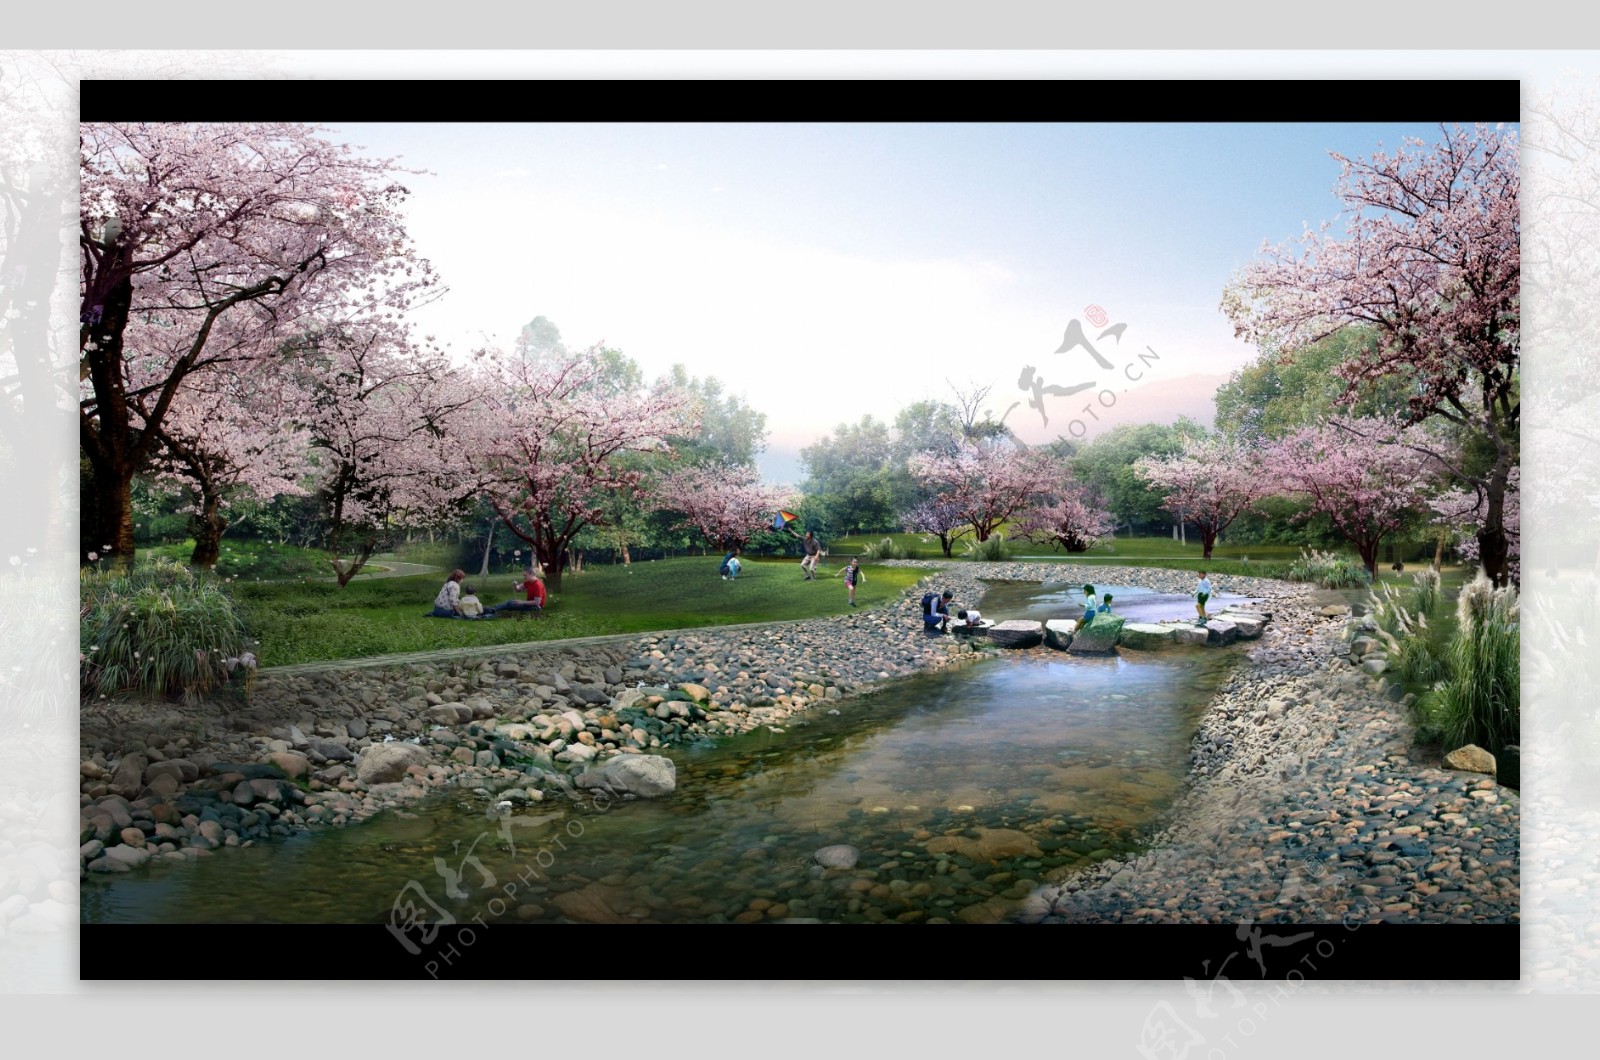 公园园林景观设计效果图PSD素材图片